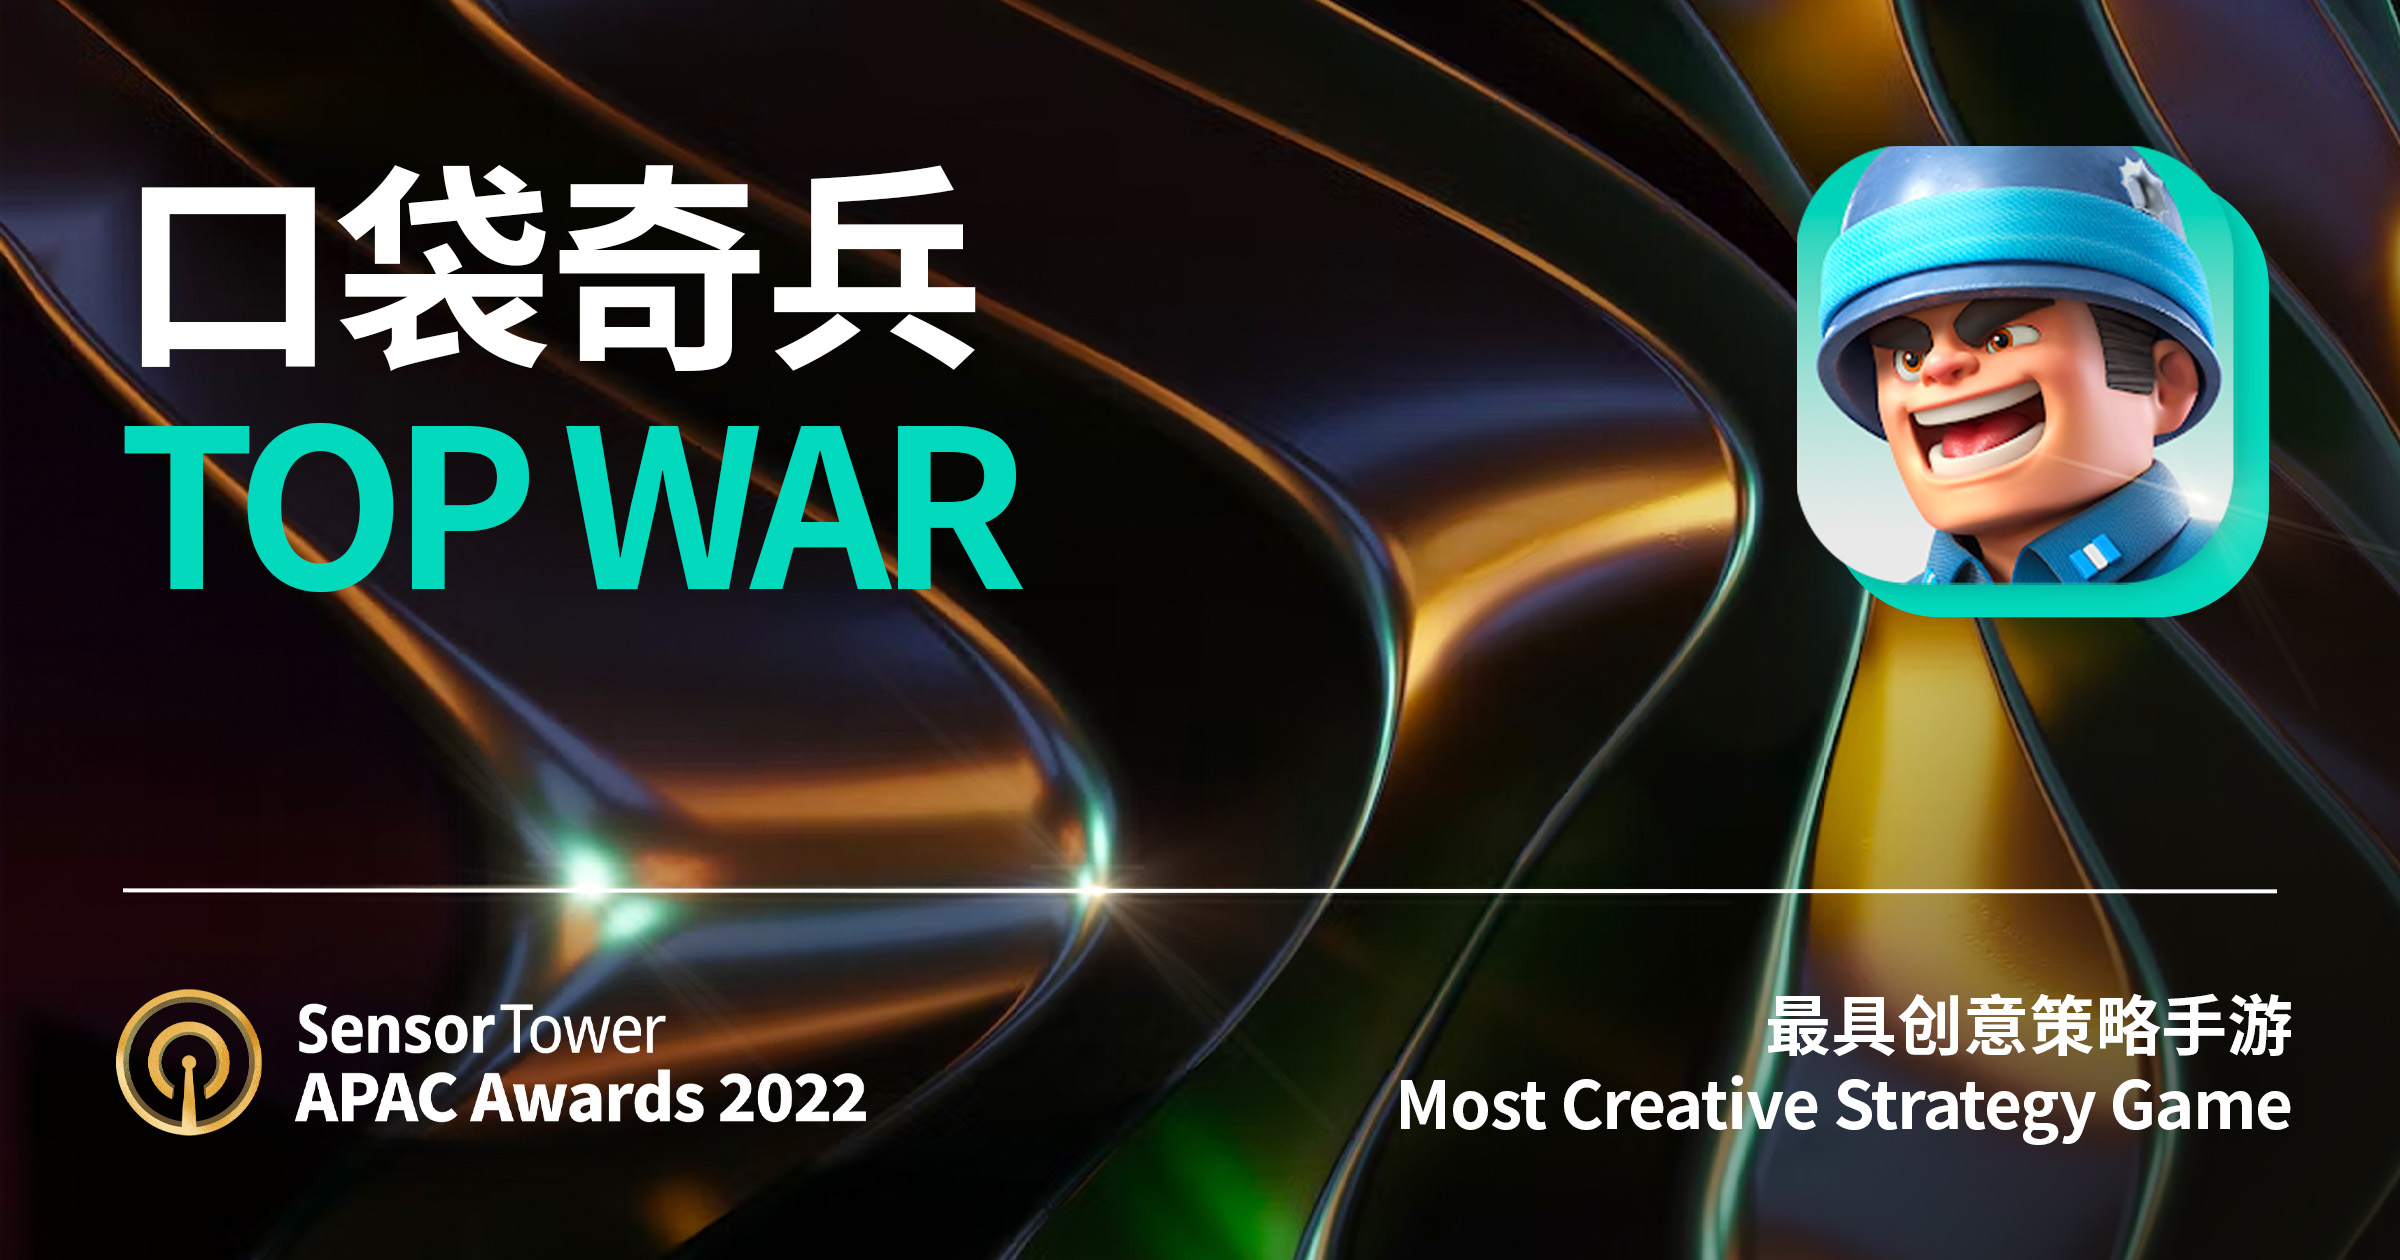 2022 APAC Awards Top War